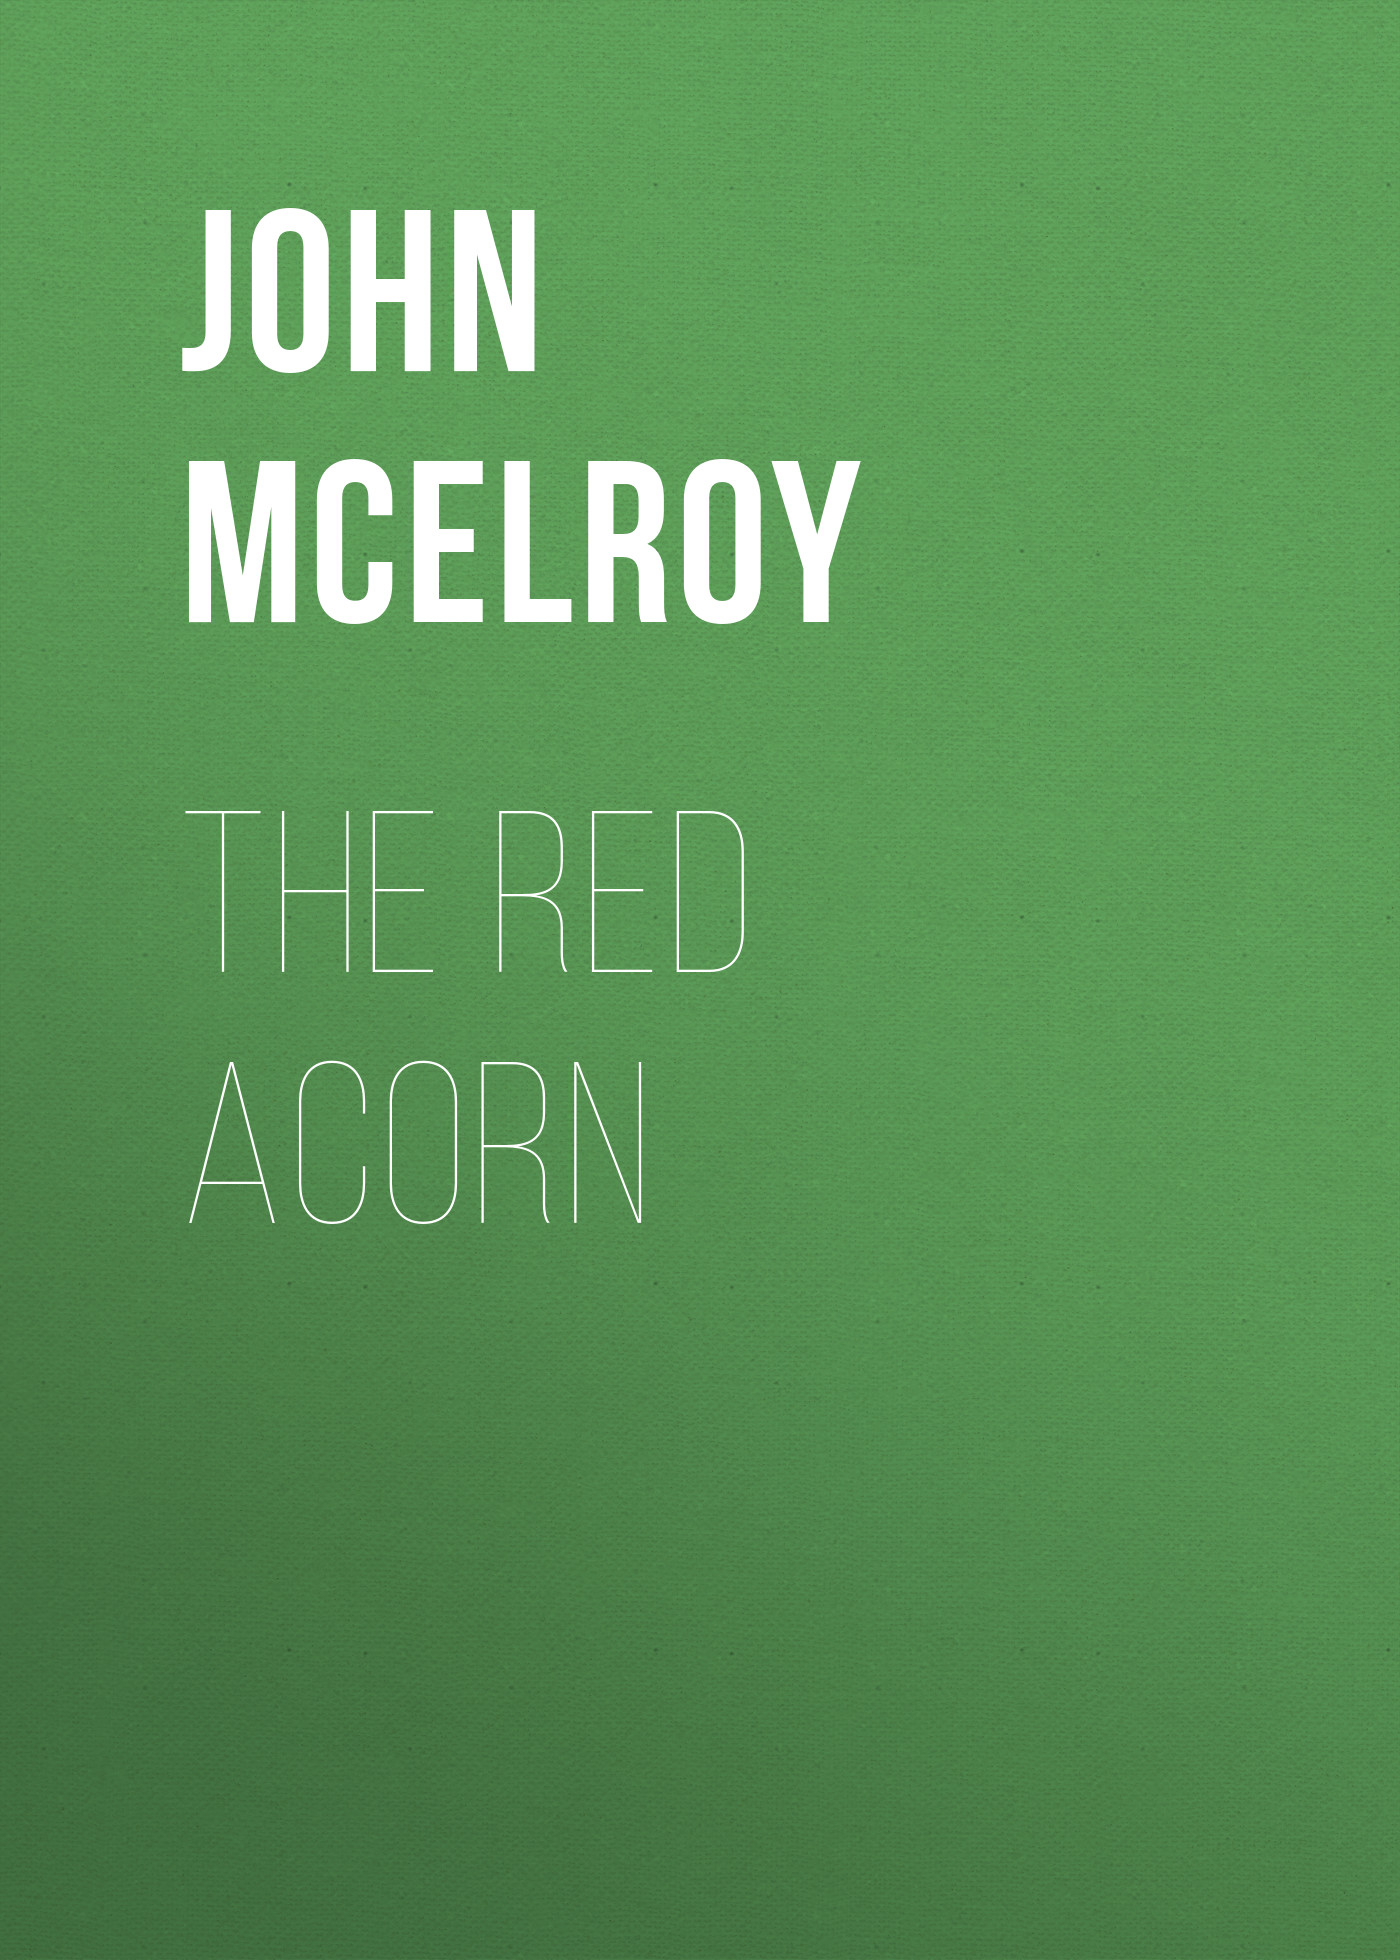 Книга The Red Acorn из серии , созданная John McElroy, может относится к жанру Зарубежная классика, История, Зарубежная образовательная литература, Зарубежная старинная литература. Стоимость электронной книги The Red Acorn с идентификатором 36324252 составляет 0 руб.